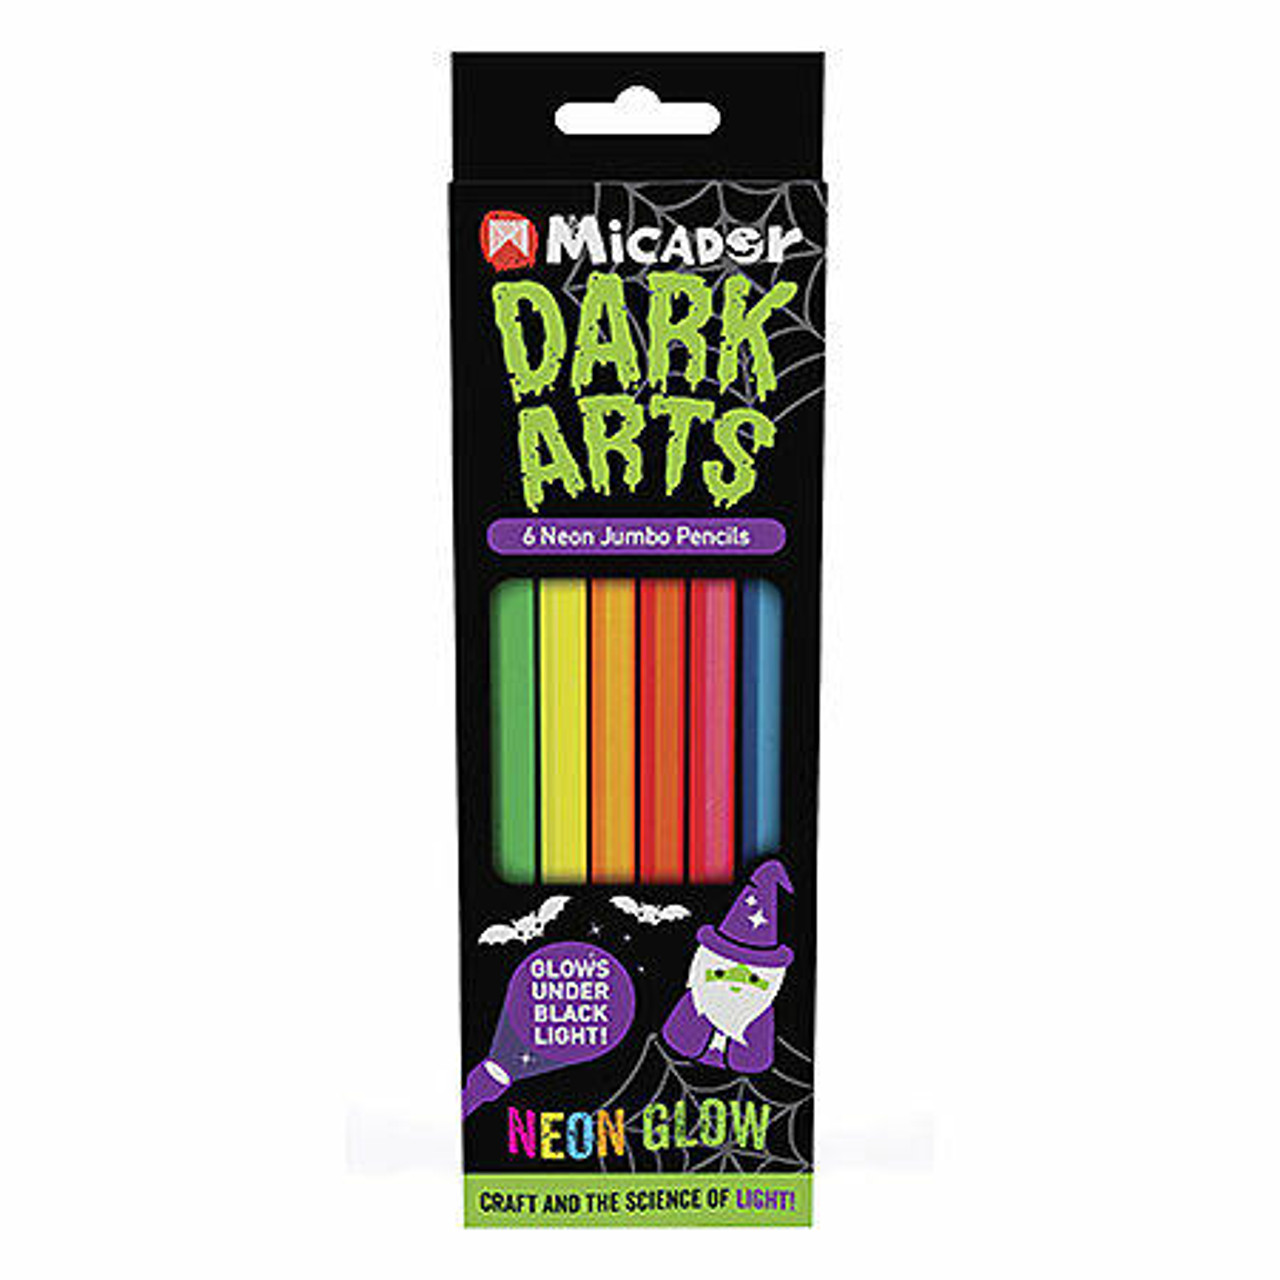 Vat19 Glow-in-the-Dark Pencil